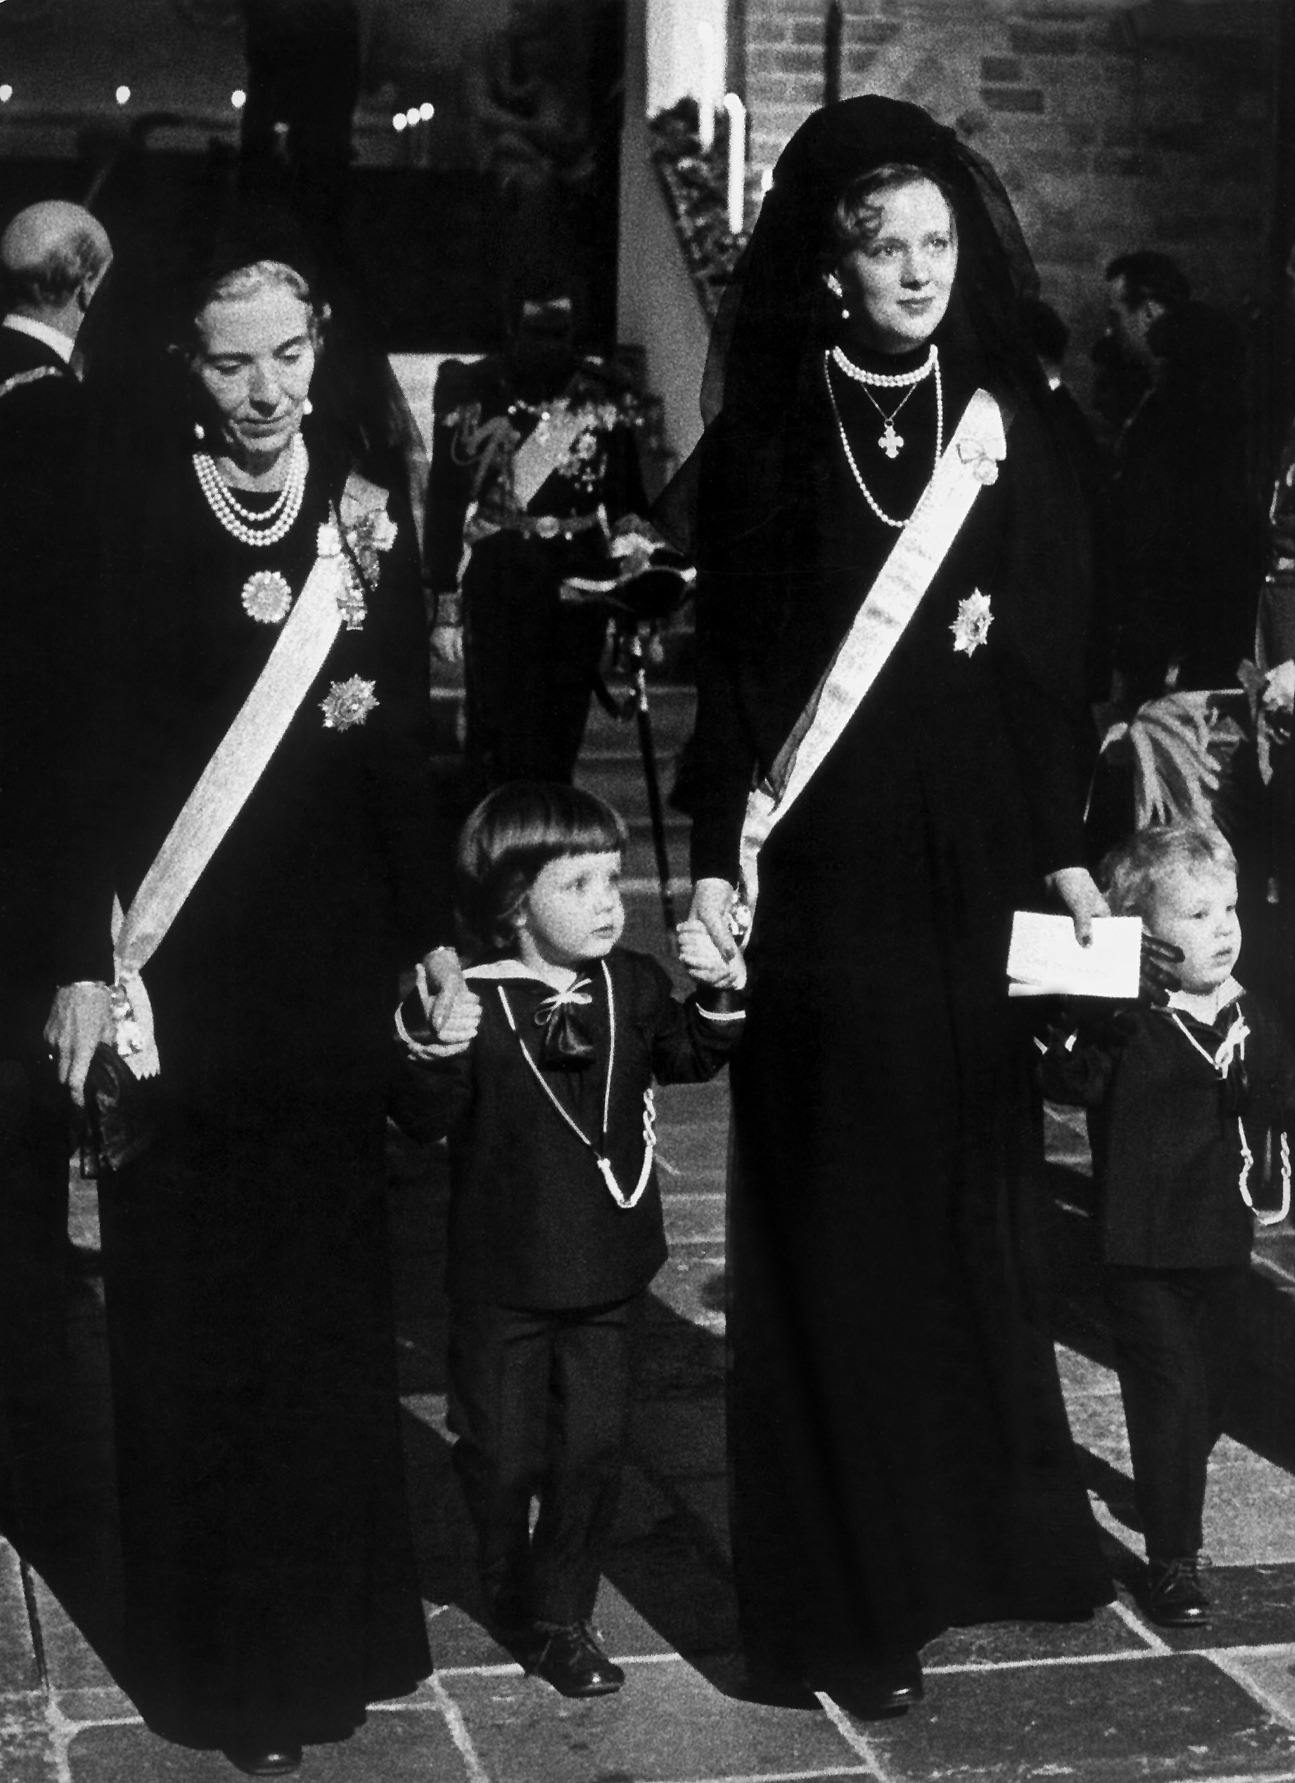 1972. Dronning Ingrid og dronning Margrethe med prinserne Frederik og Joachim til kong Frederik IX's begravelse i Roskilde Domkirke den 24. januar 1972.. (Foto: ALLAN MOE/Ritzau Scanpix)